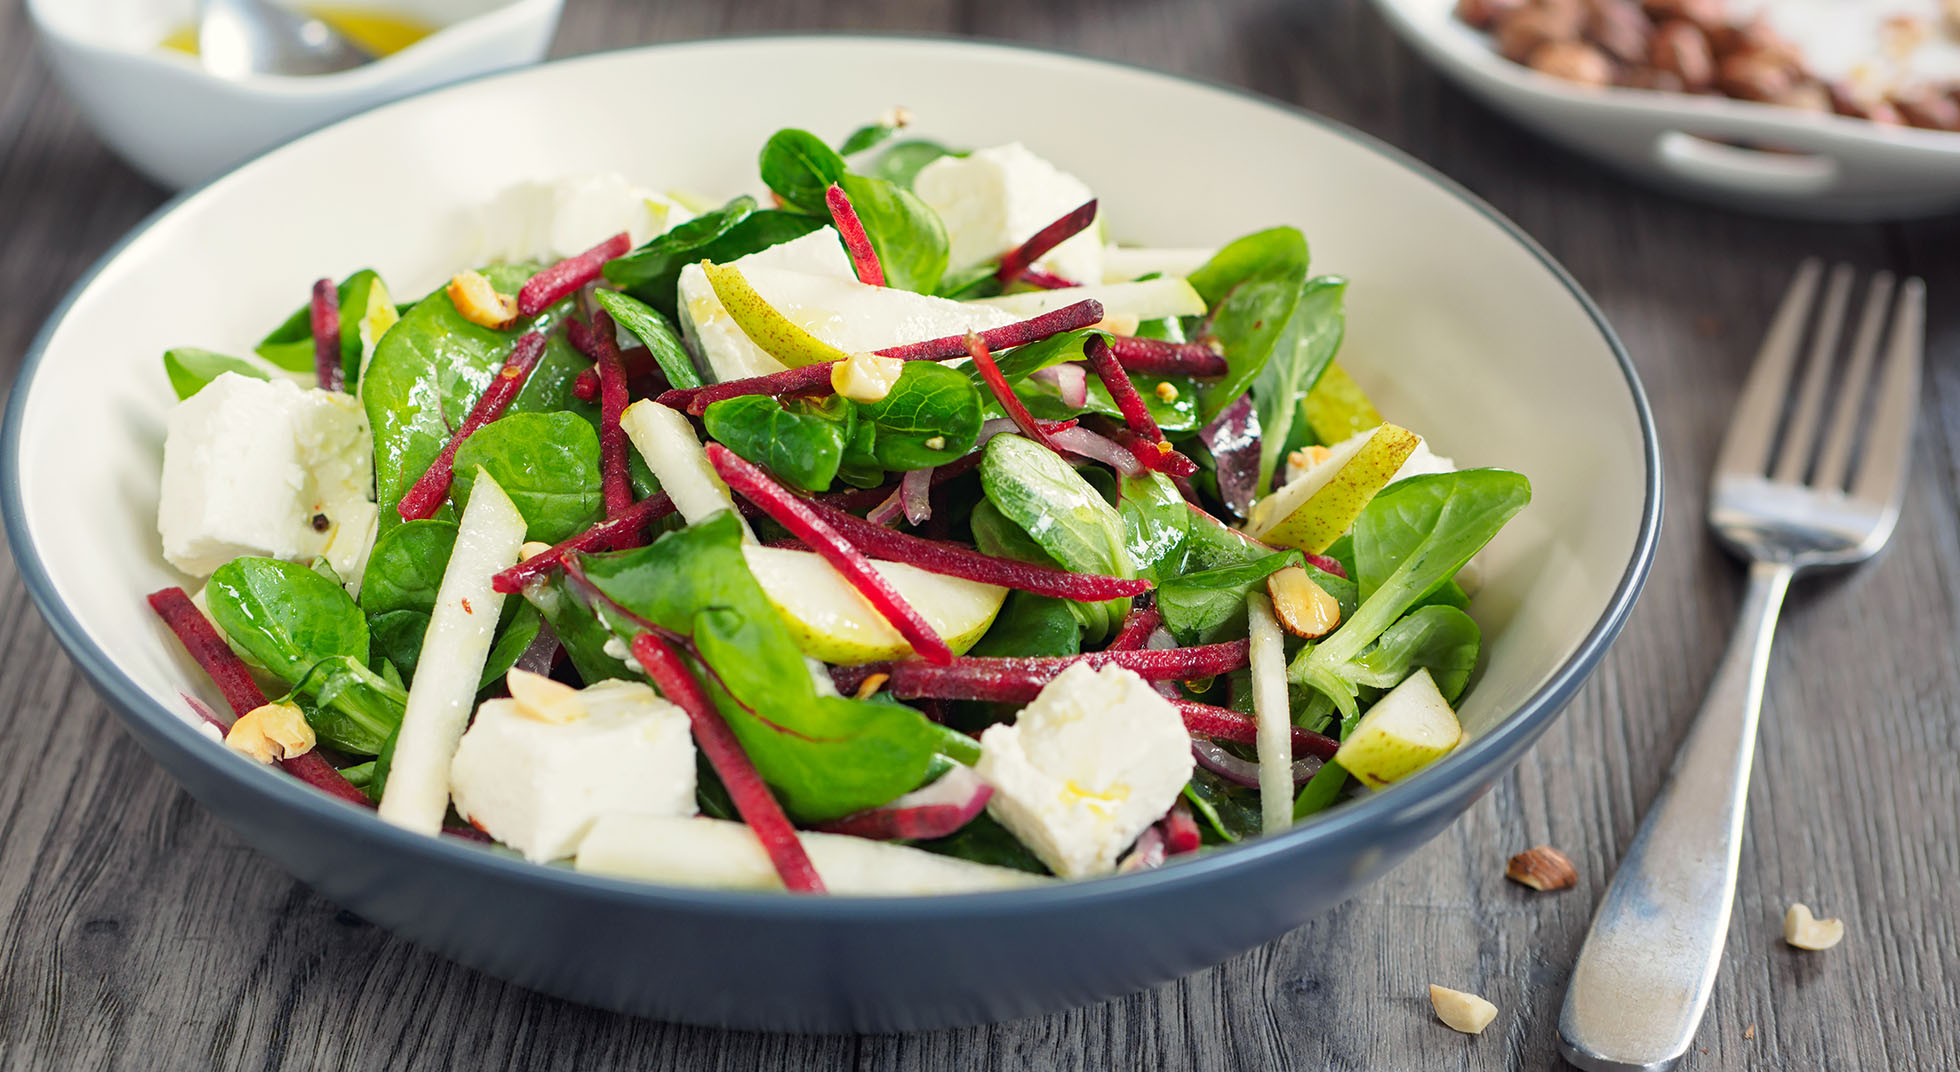 Come condire l’insalata, tutti i segreti e i consigli | AIA Food